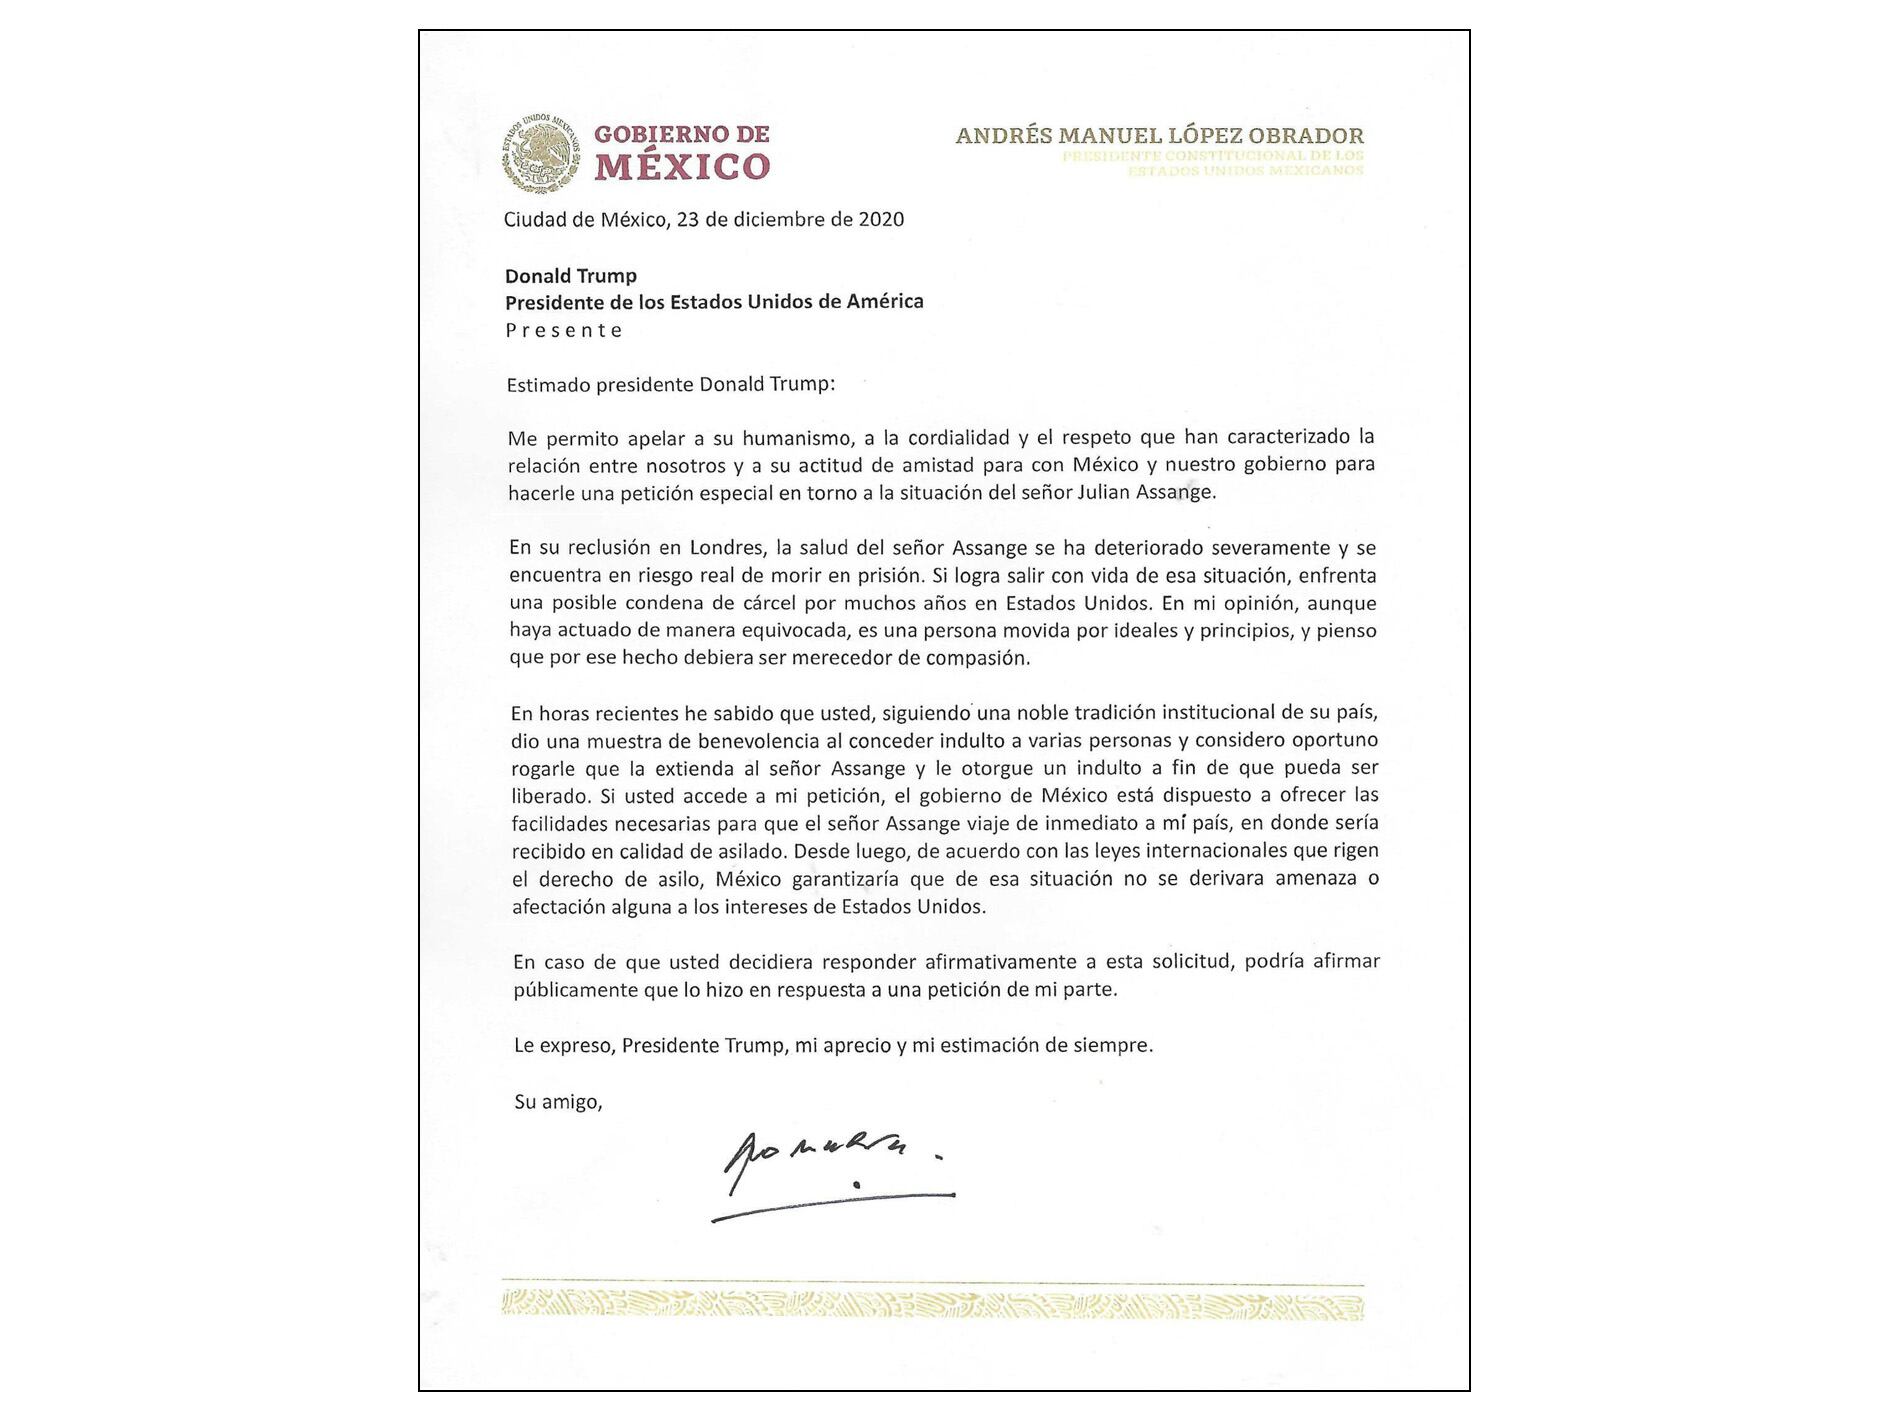 La carta que López Obrador envió a Donald Trump para exigir la liberación del periodista Julian Assange, emitida en diciembre de 2020.